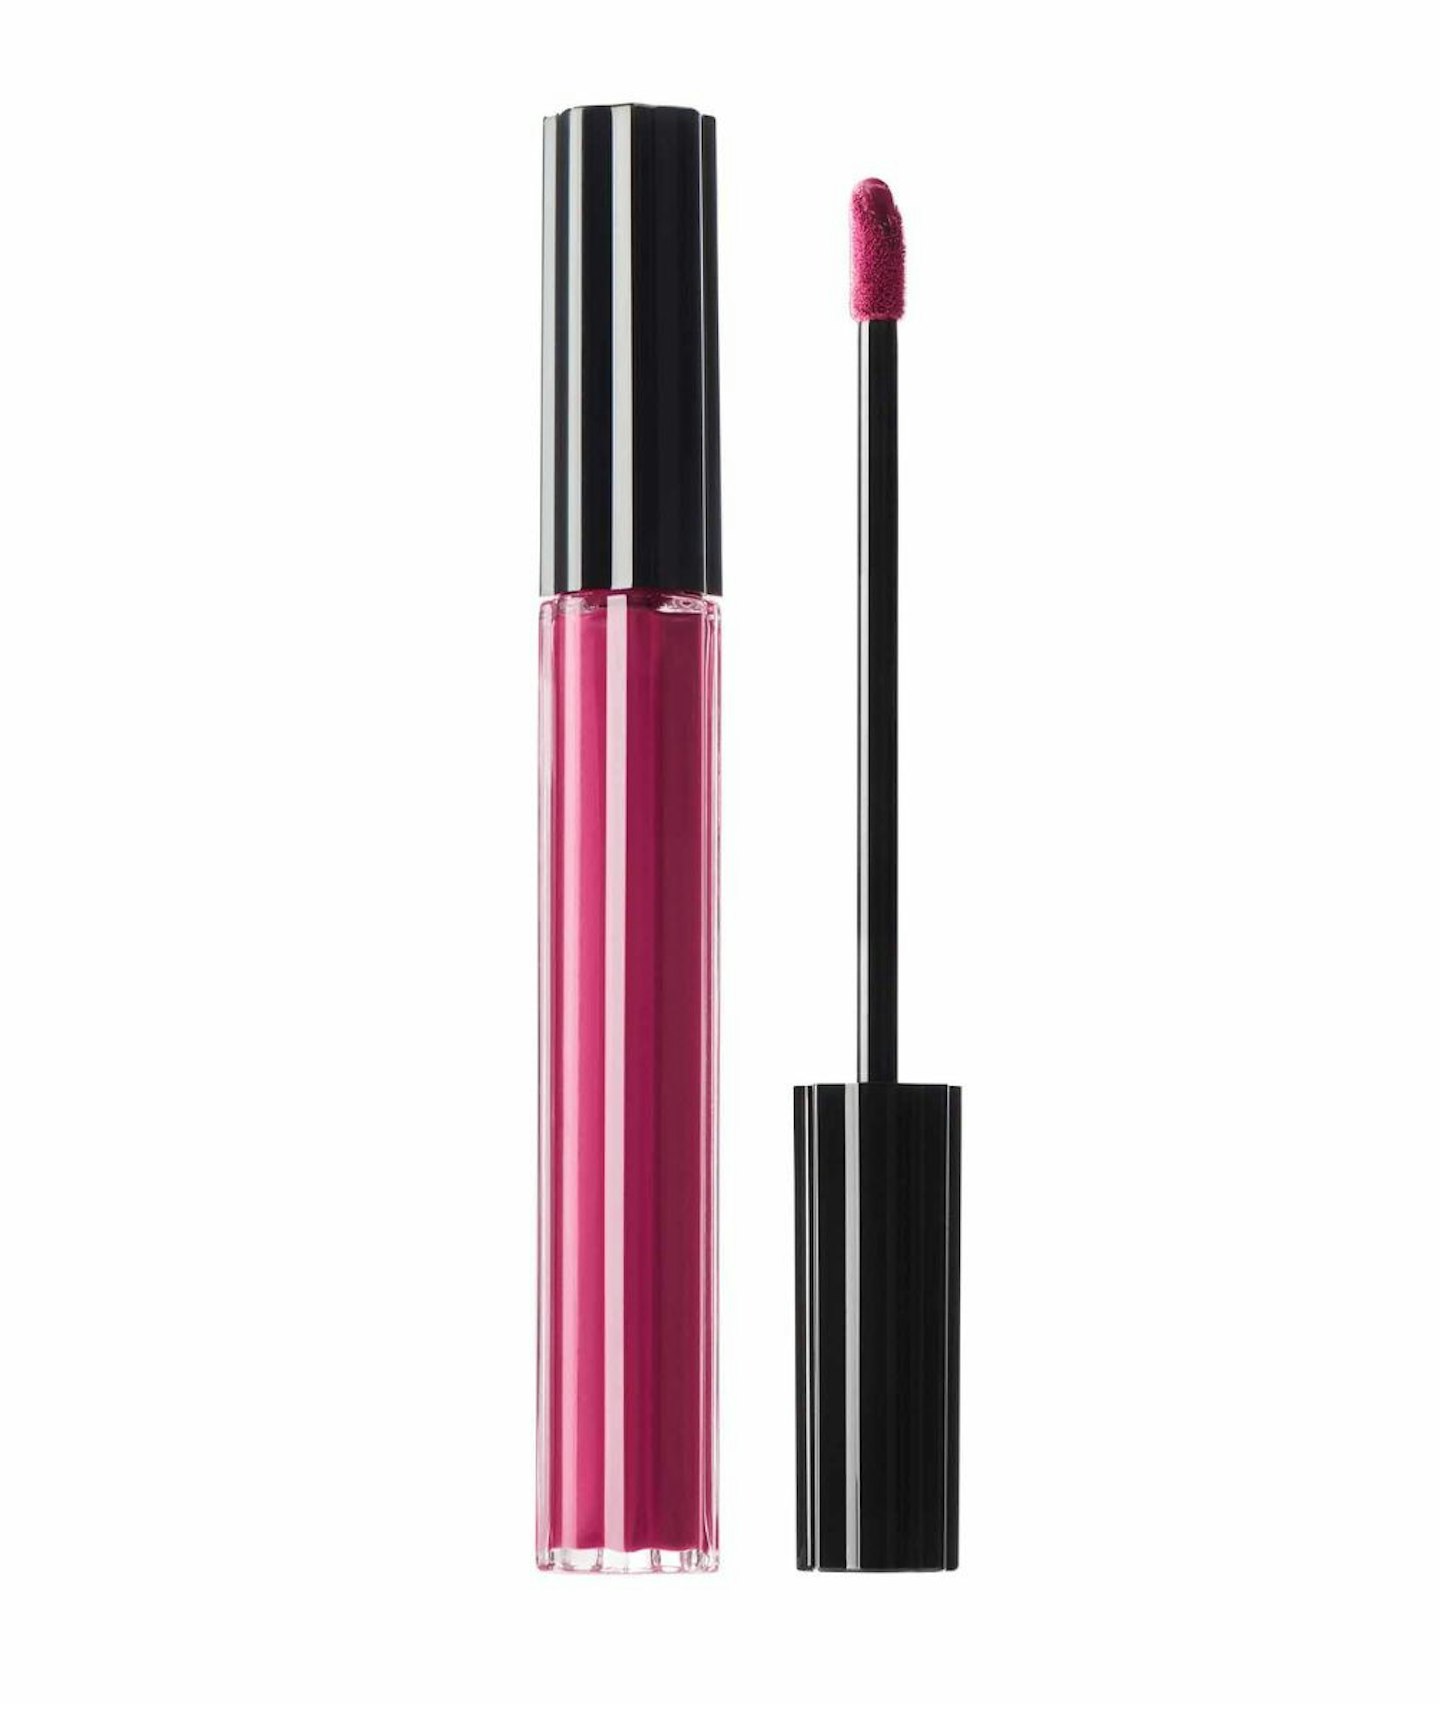 KVD Beauty Everlasting Hyperlight Liquid Lipstick